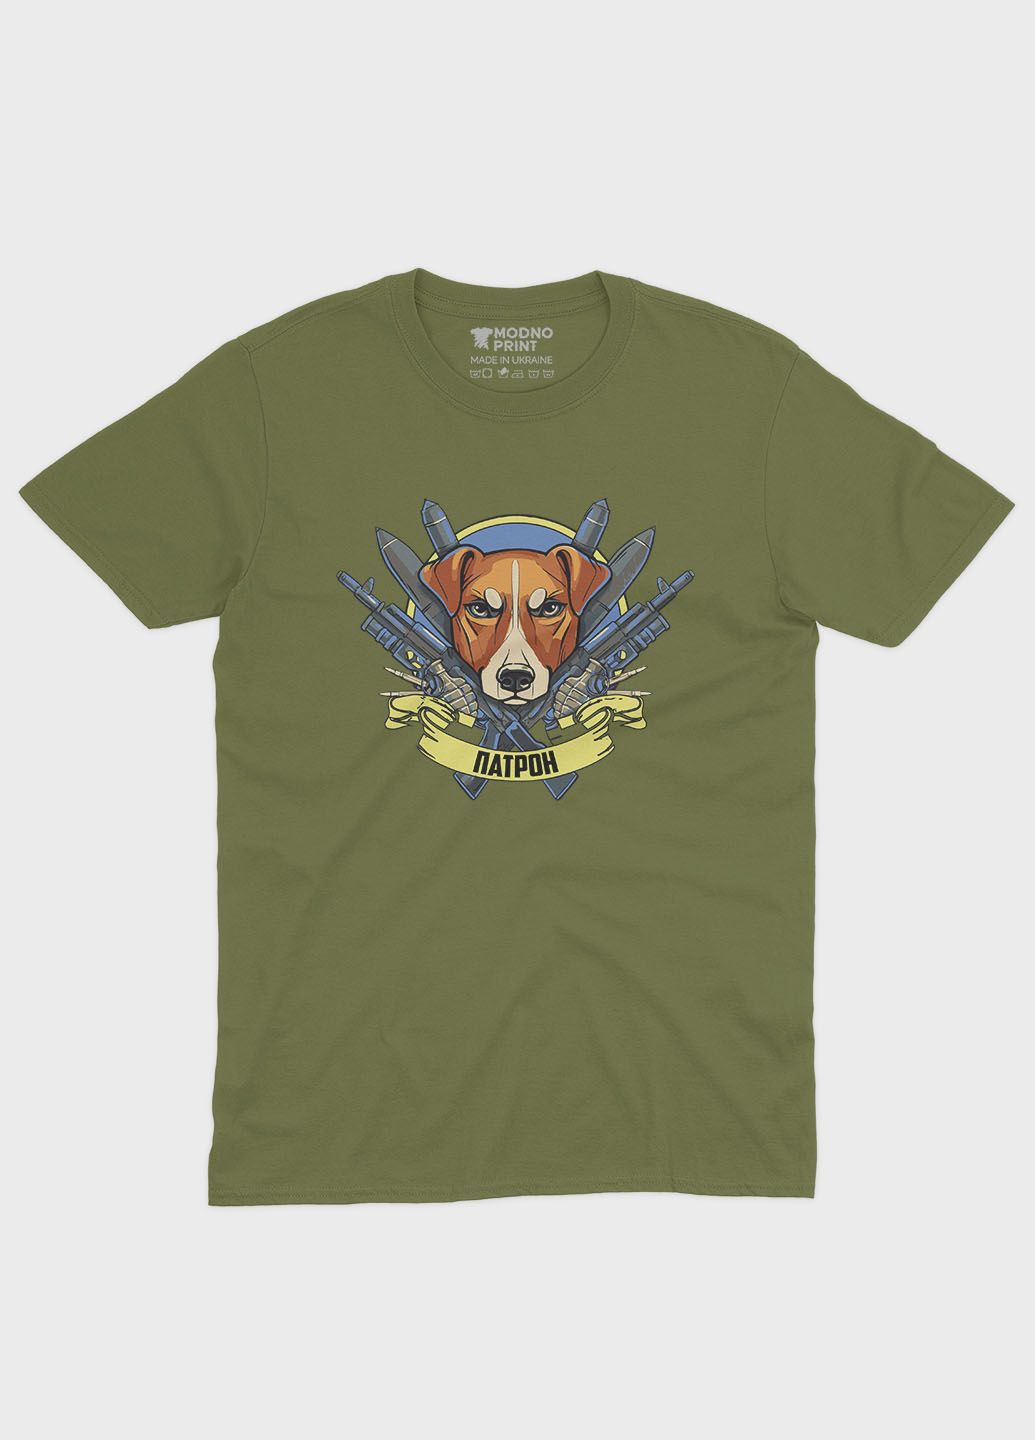 Хаки (оливковая) мужская футболка с патриотическим принтом пес патрон (ts001-2-hgr-005-1-056) Modno